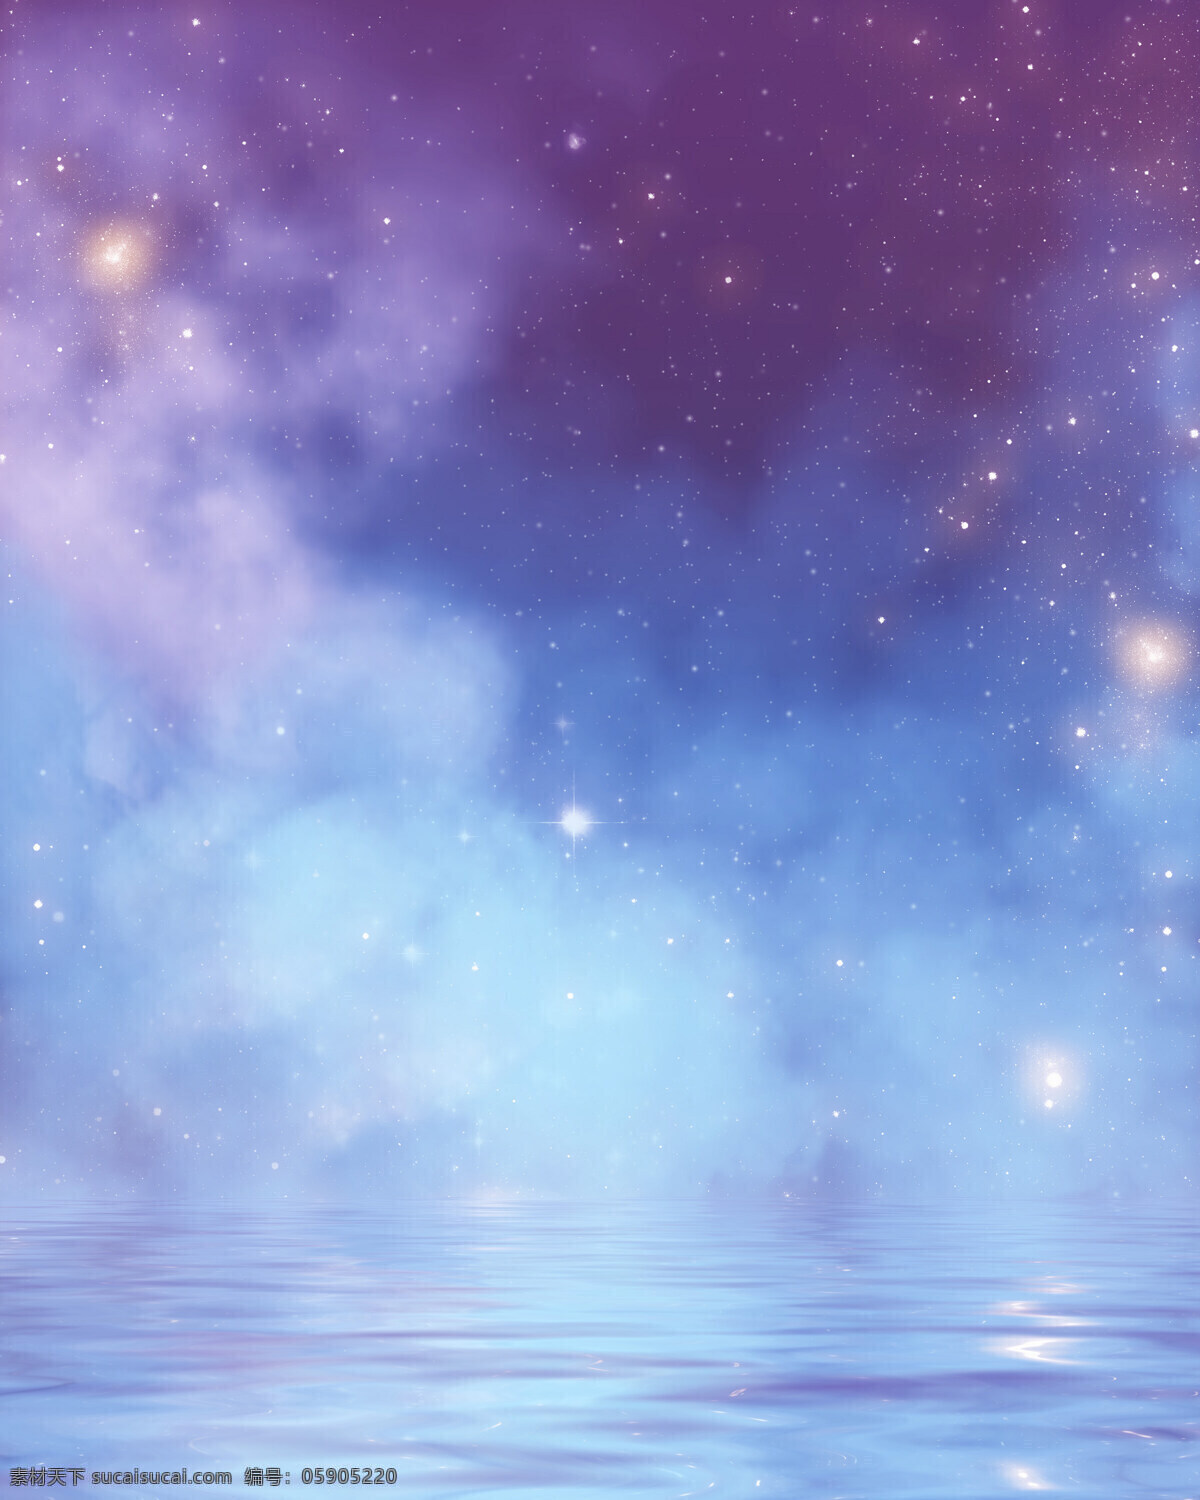 梦幻天空 紫色梦幻 天空 星星 水面 蓝色 光晕 迷纱 手绘 场景 背景 动漫动画 风景漫画